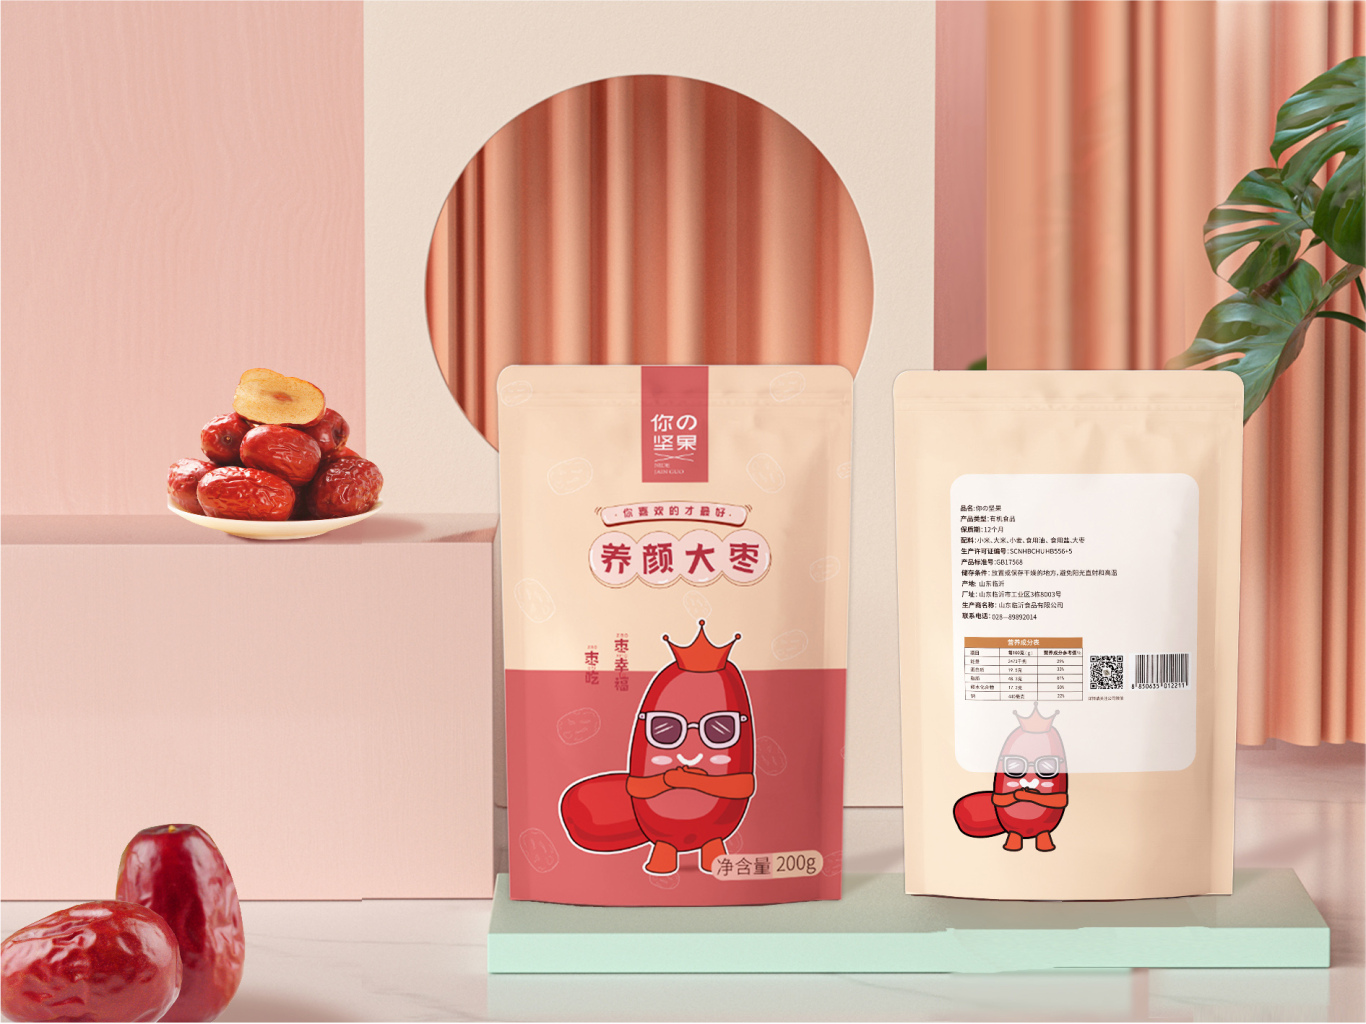 坚果包装设计-食品包装设计-零食包装设计-包装设计图13